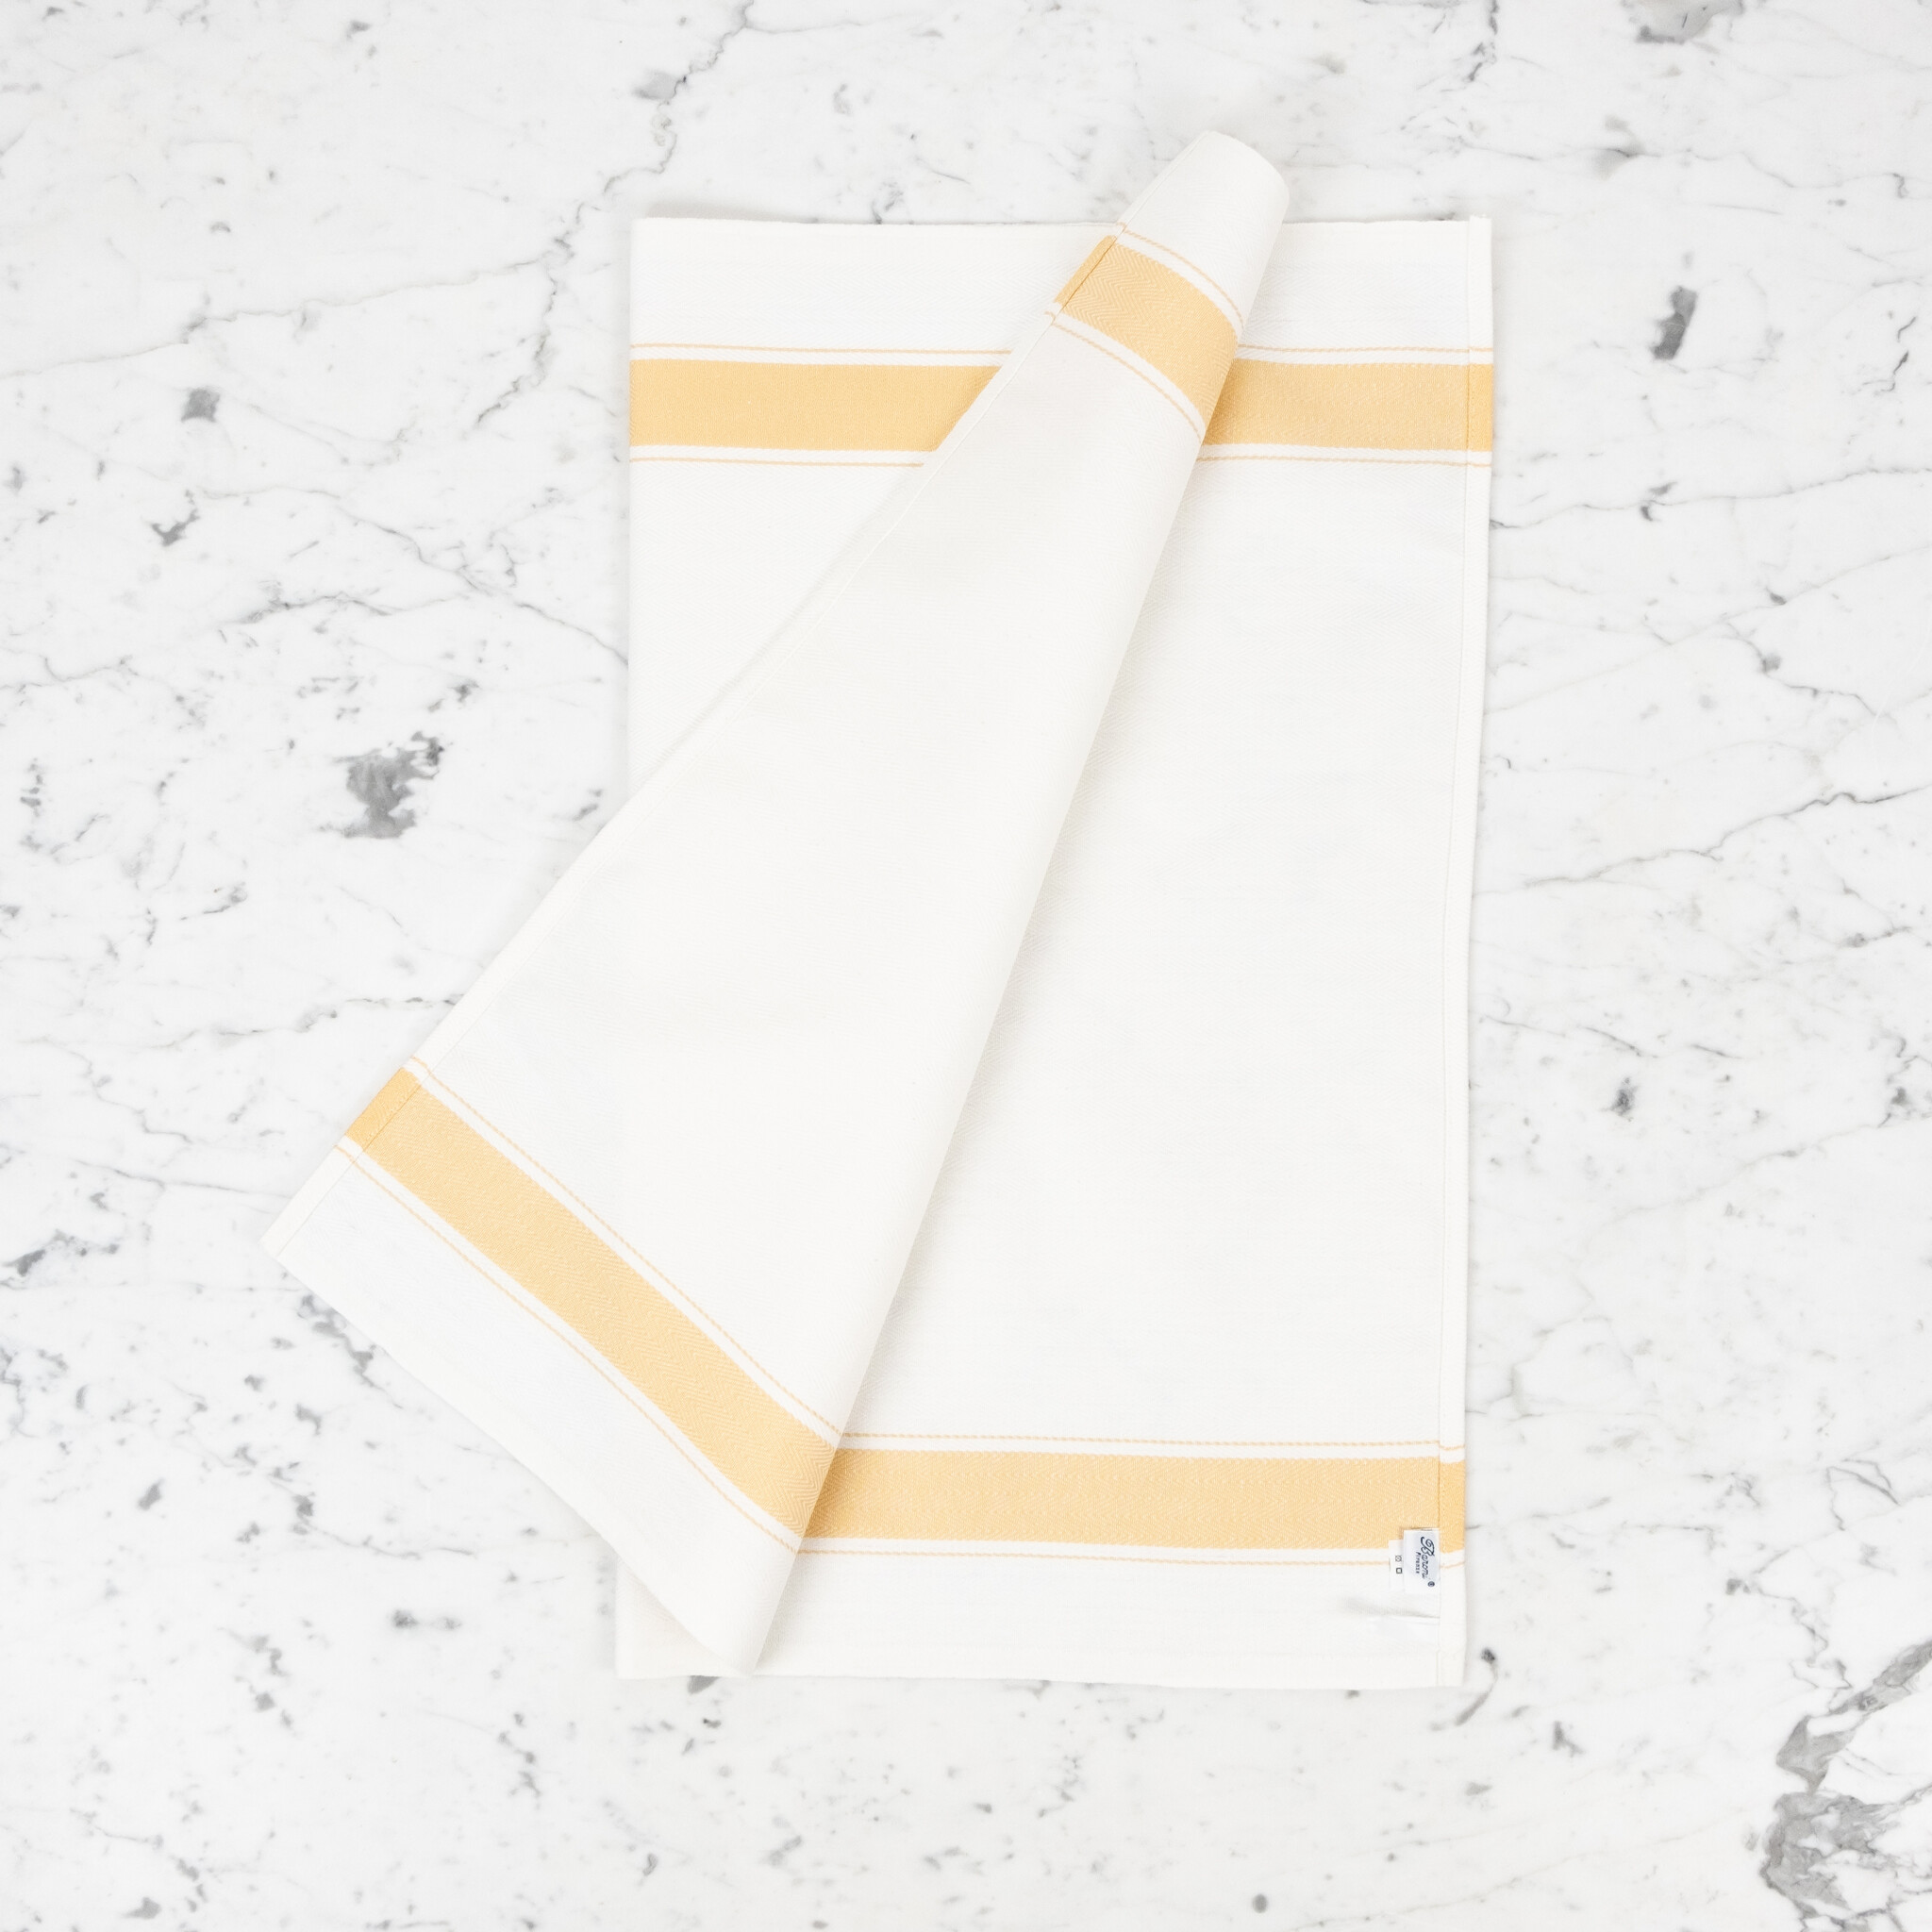 Italian Cotton Kitchen Towel - Herringbone Yellow - 26in x 23in